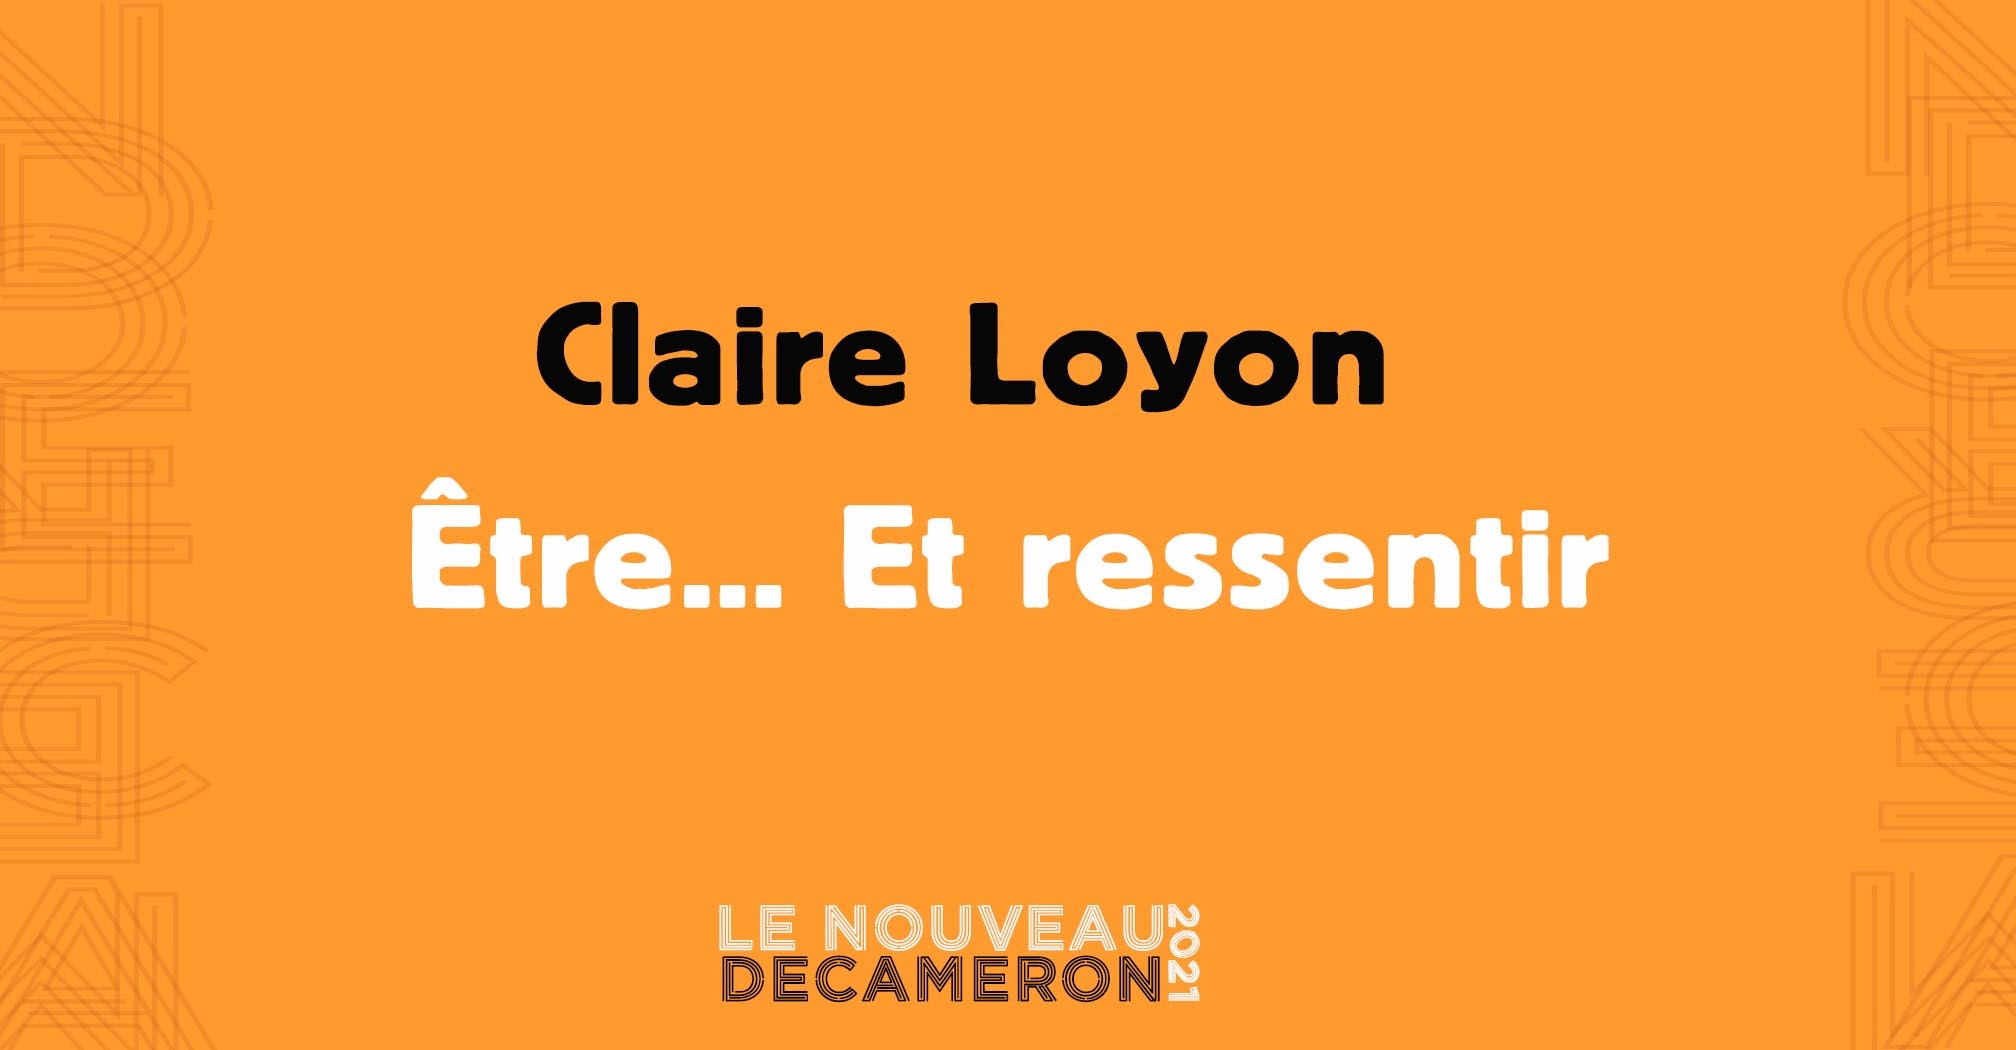 Claire Loyon - Être... Et ressentir